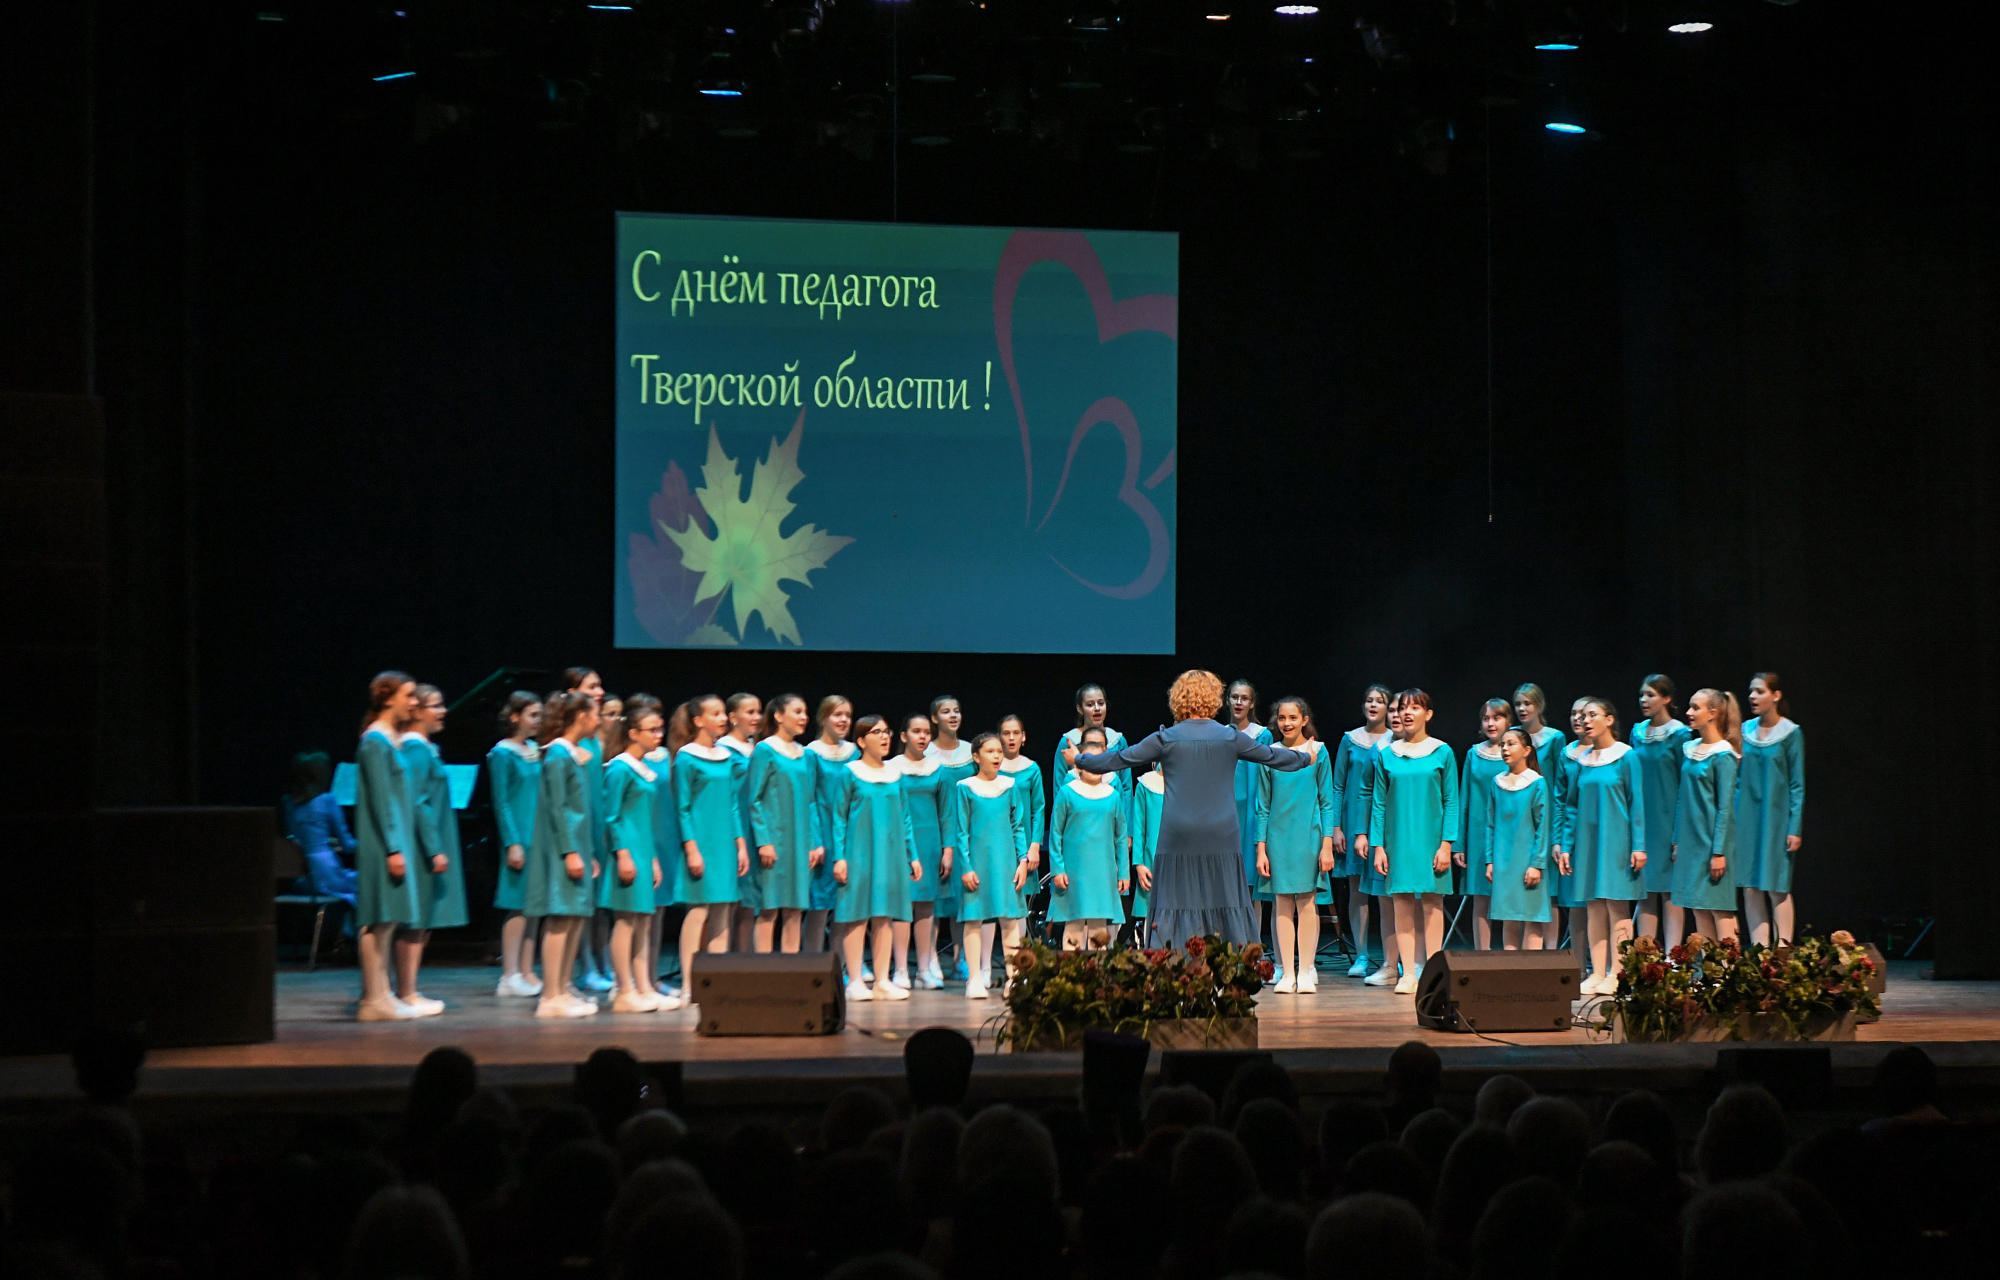 Работникам сферы образования вручили награды губернатора Тверской области